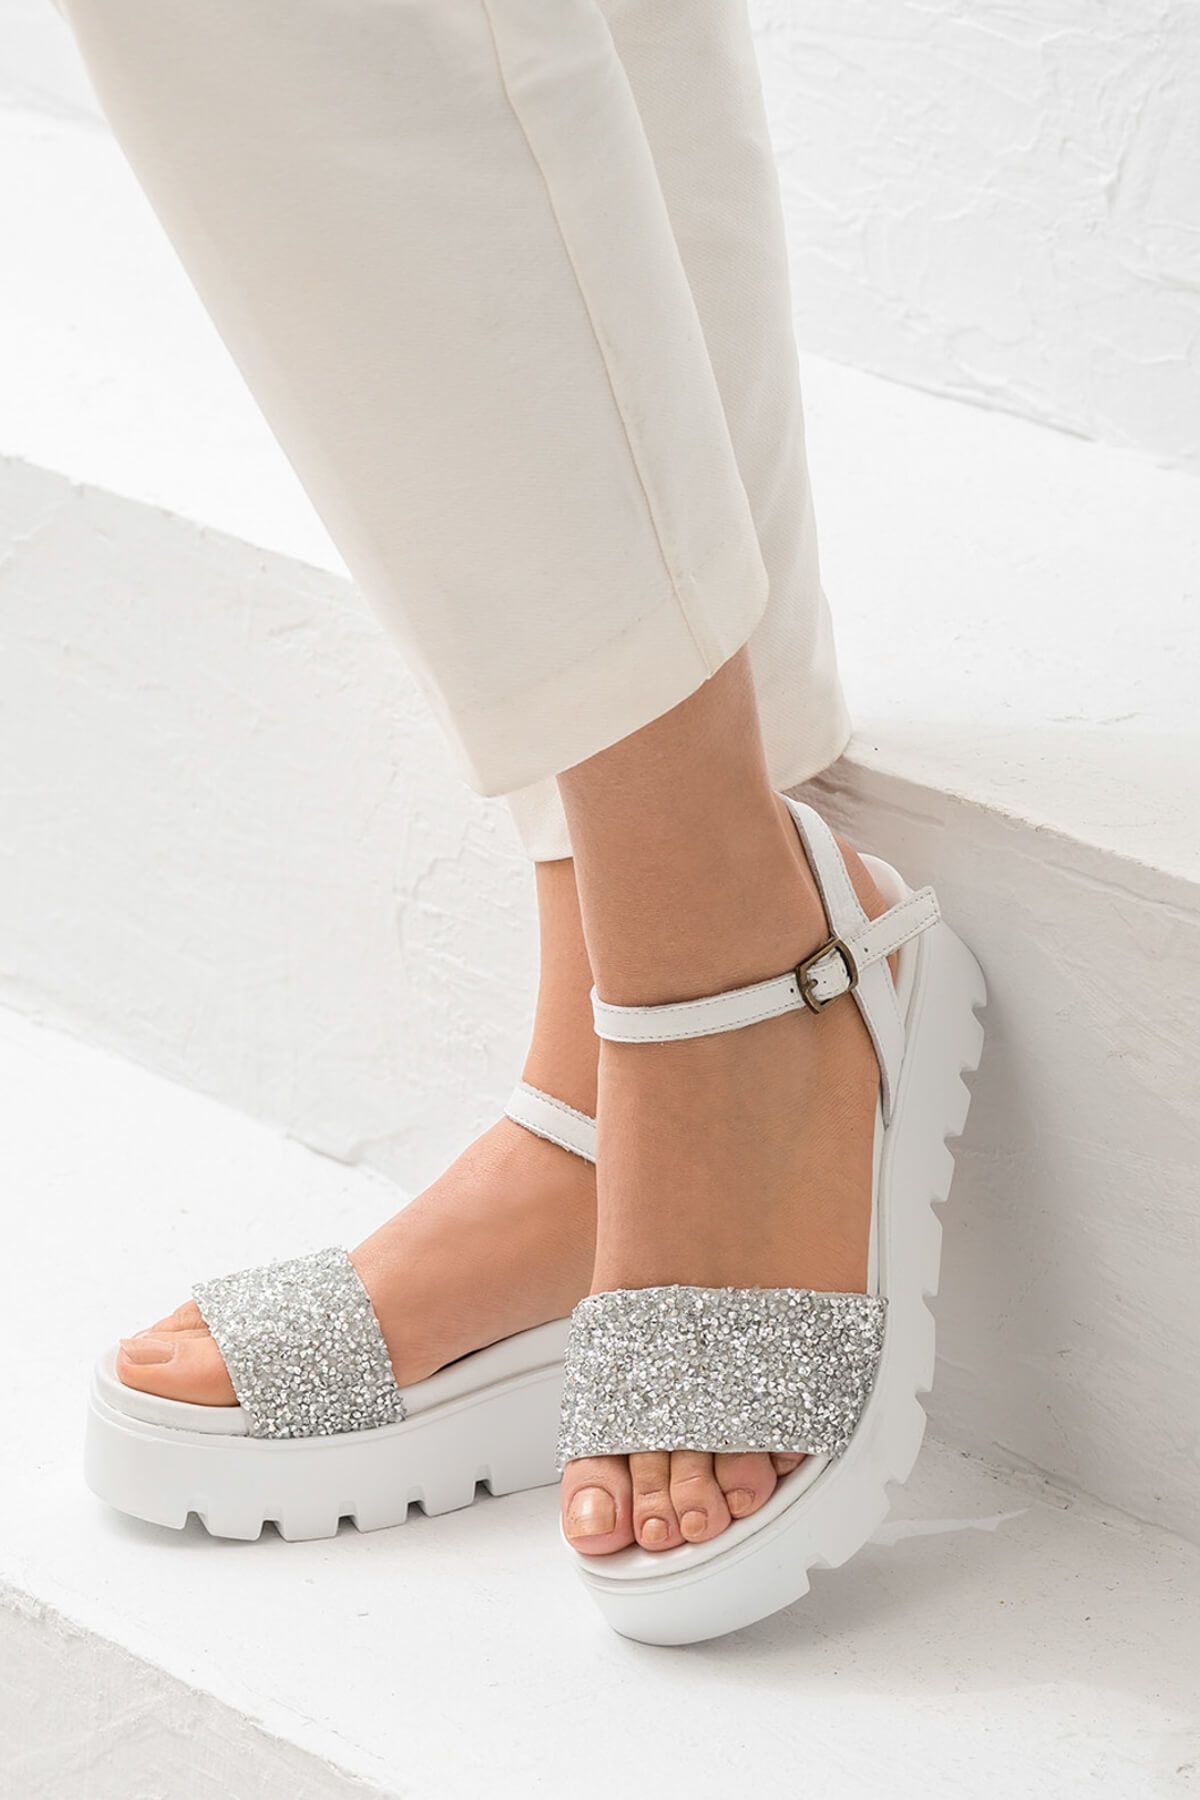 Elle TAMPOLO Hakiki Deri Beyaz Kadın Topuklu Ayakkabı